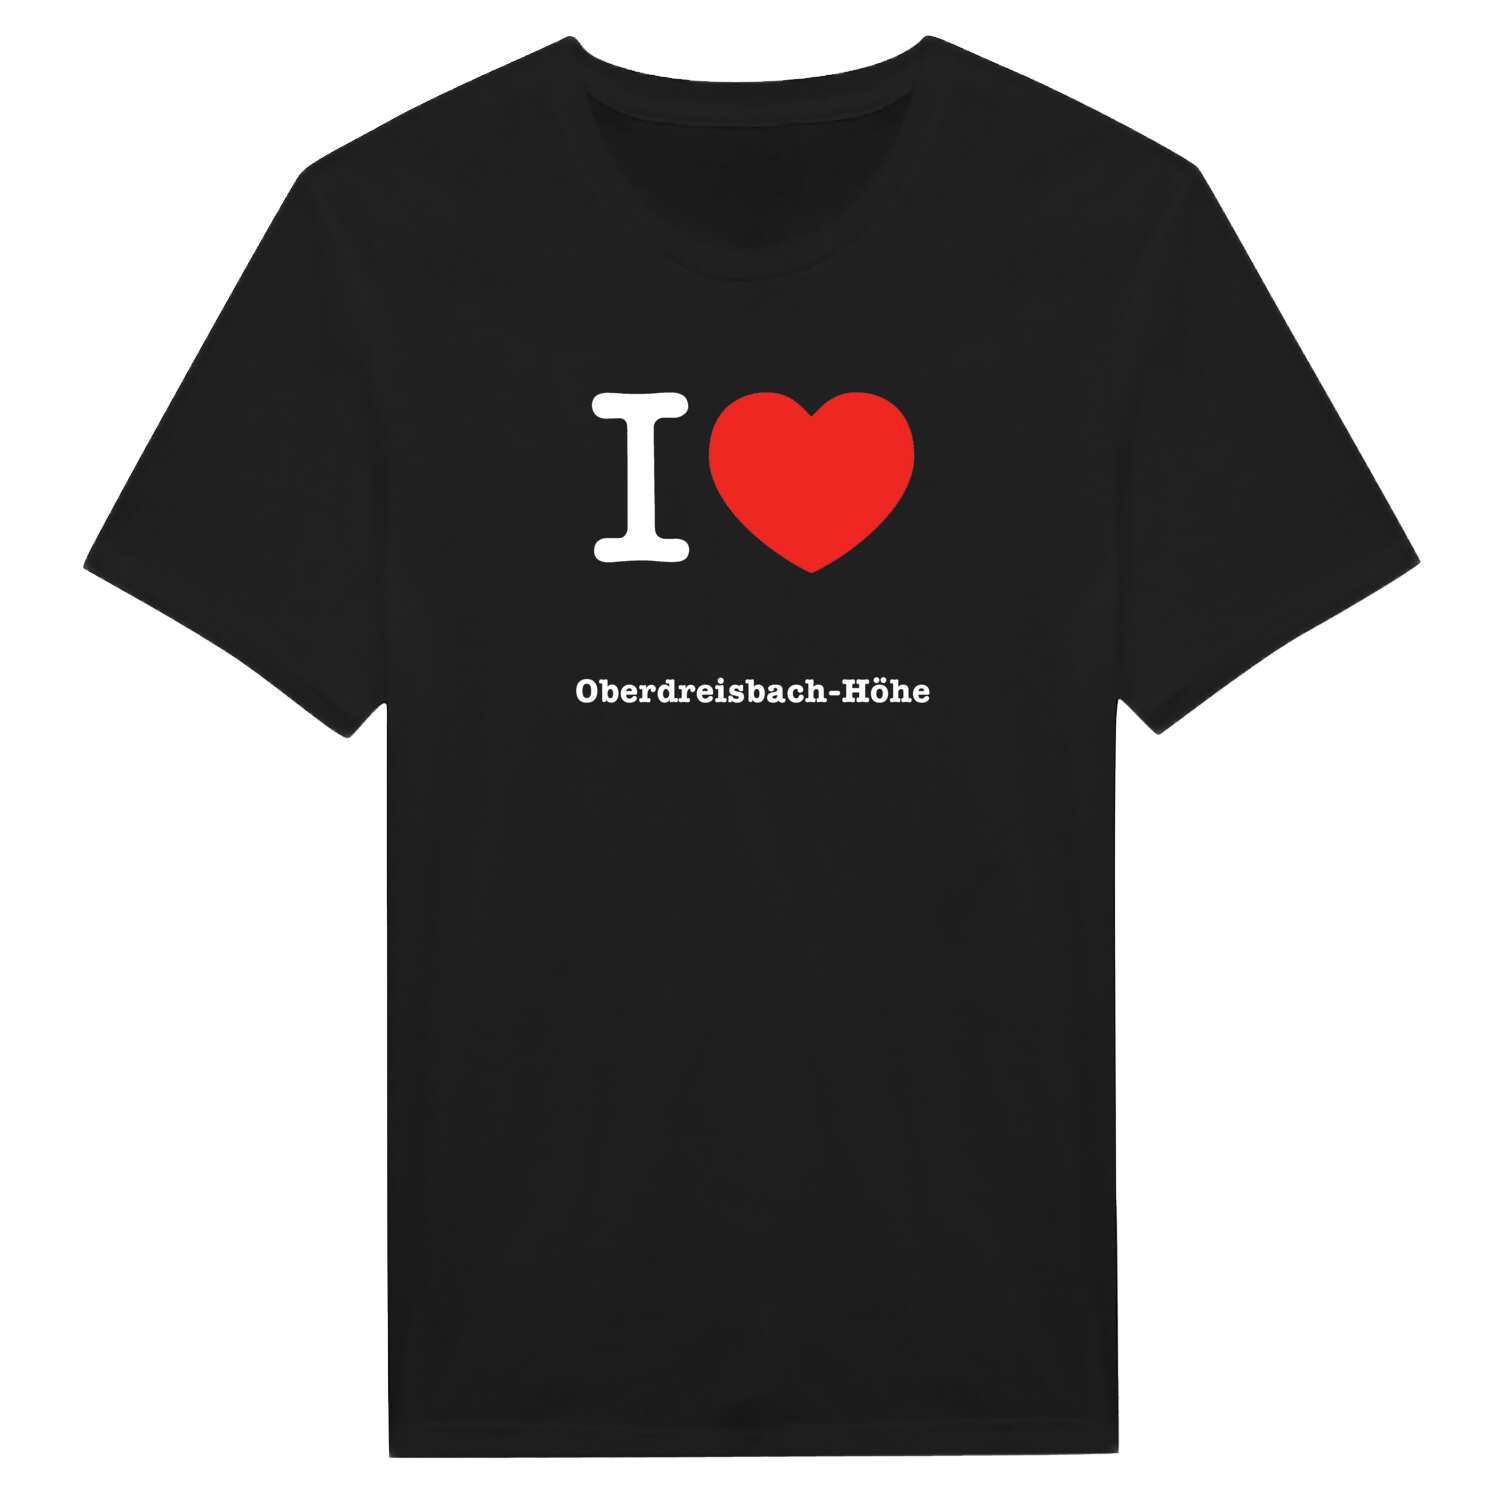 Oberdreisbach-Höhe T-Shirt »I love«